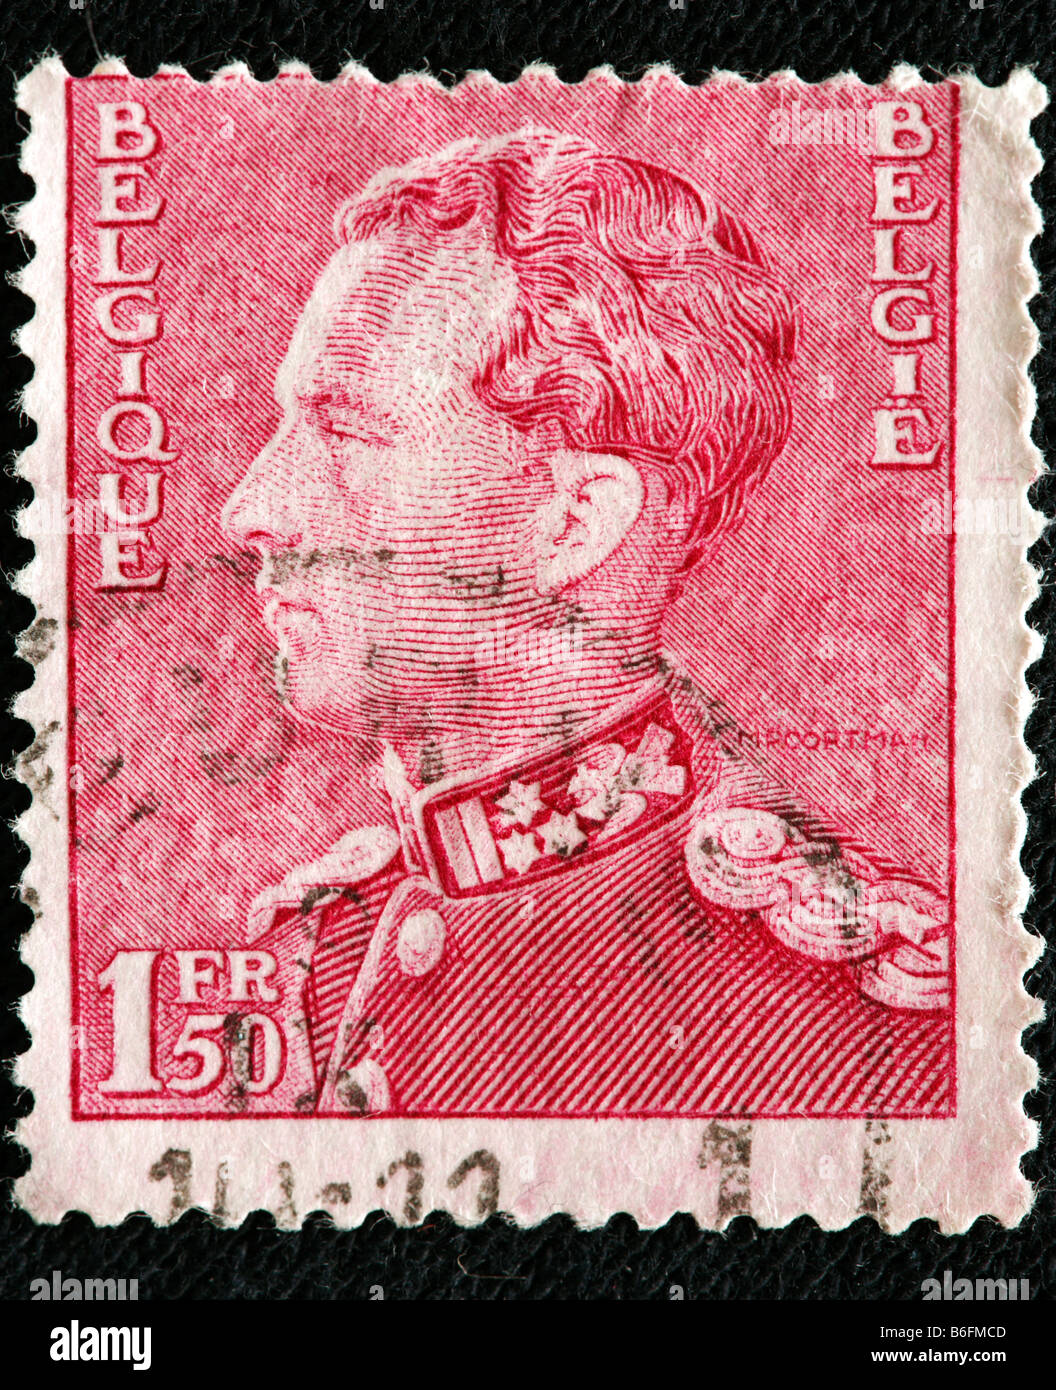 Le Roi Léopold III de Belgique (1934-1951), timbre-poste, Belgique Banque D'Images